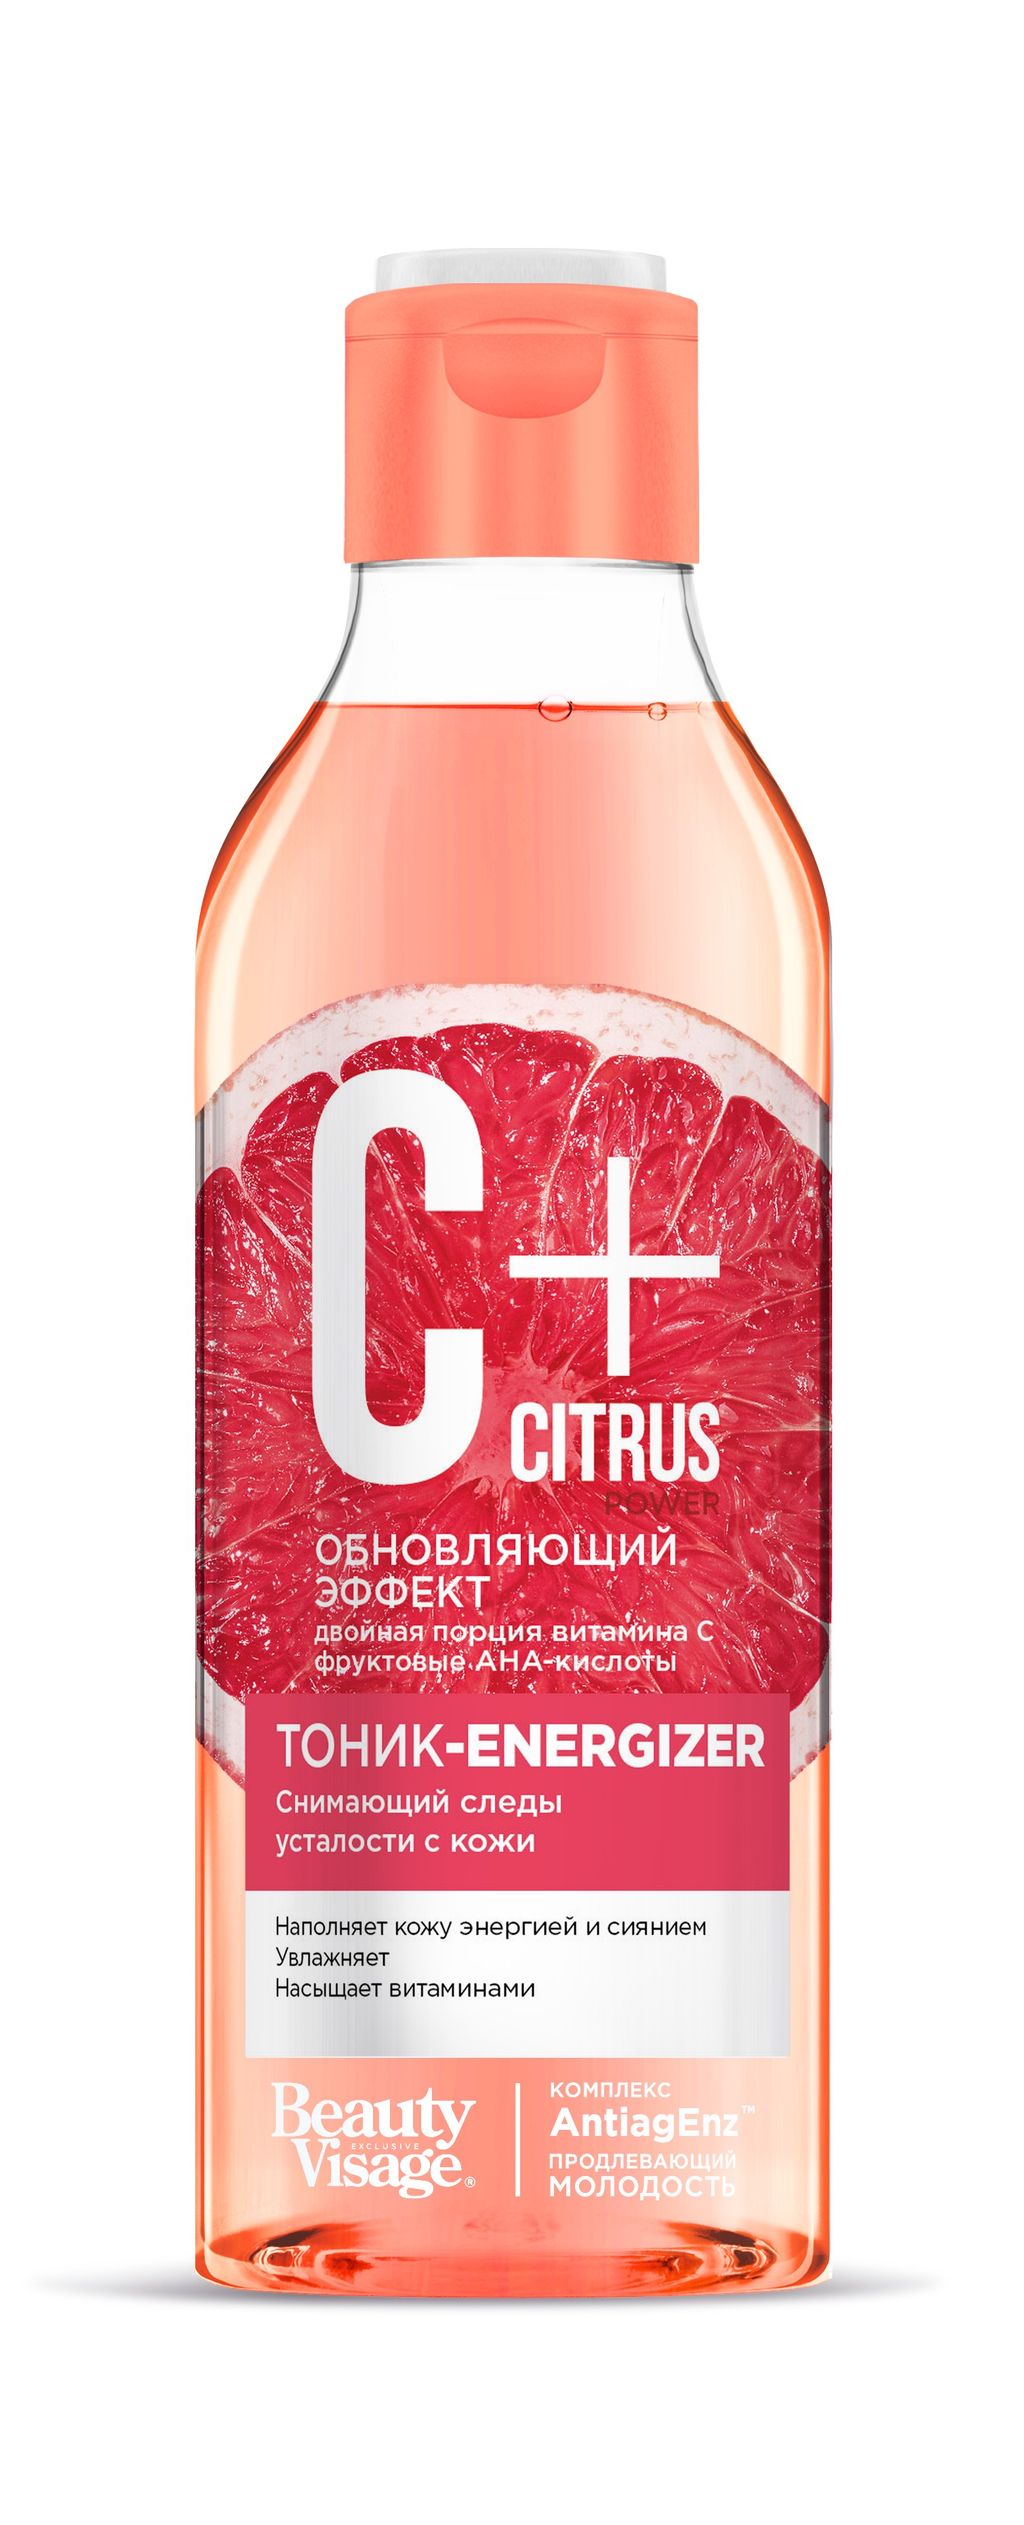 фото упаковки C+Citrus Тоник-energizer снимающий следы усталости